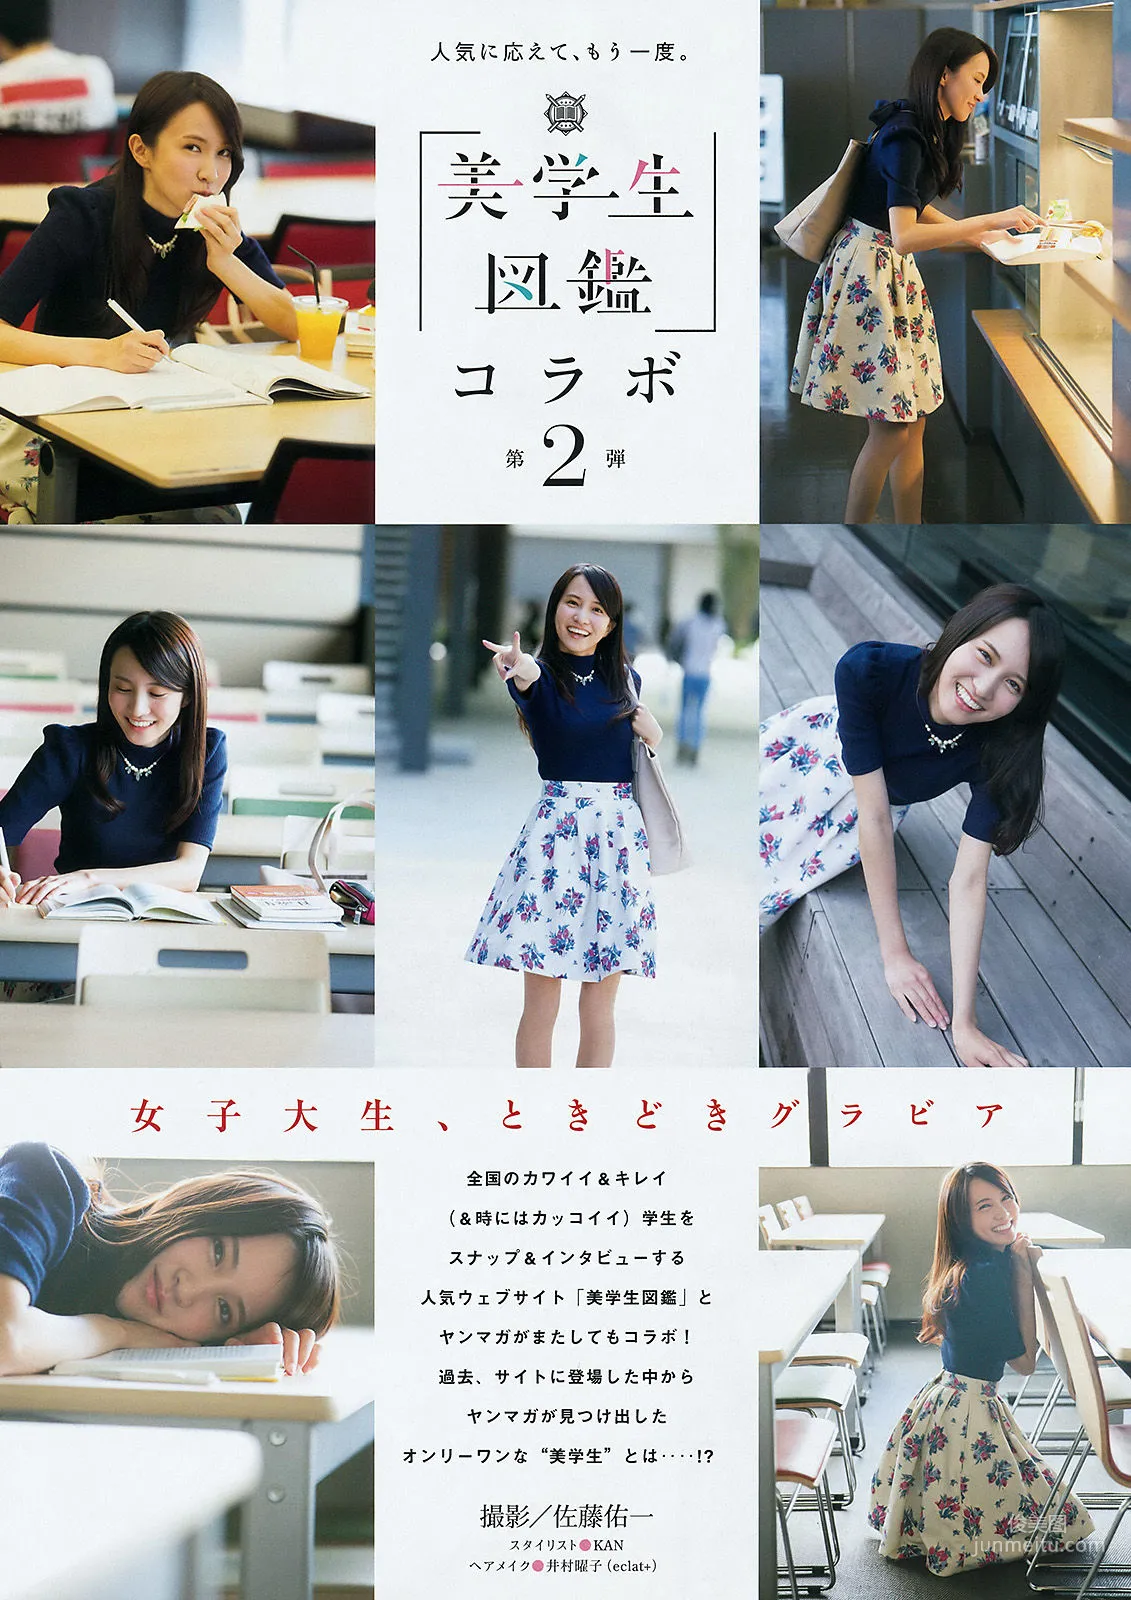 [Young Magazine] 宮脇咲良 松井珠理奈 2015年No.51 写真杂志9